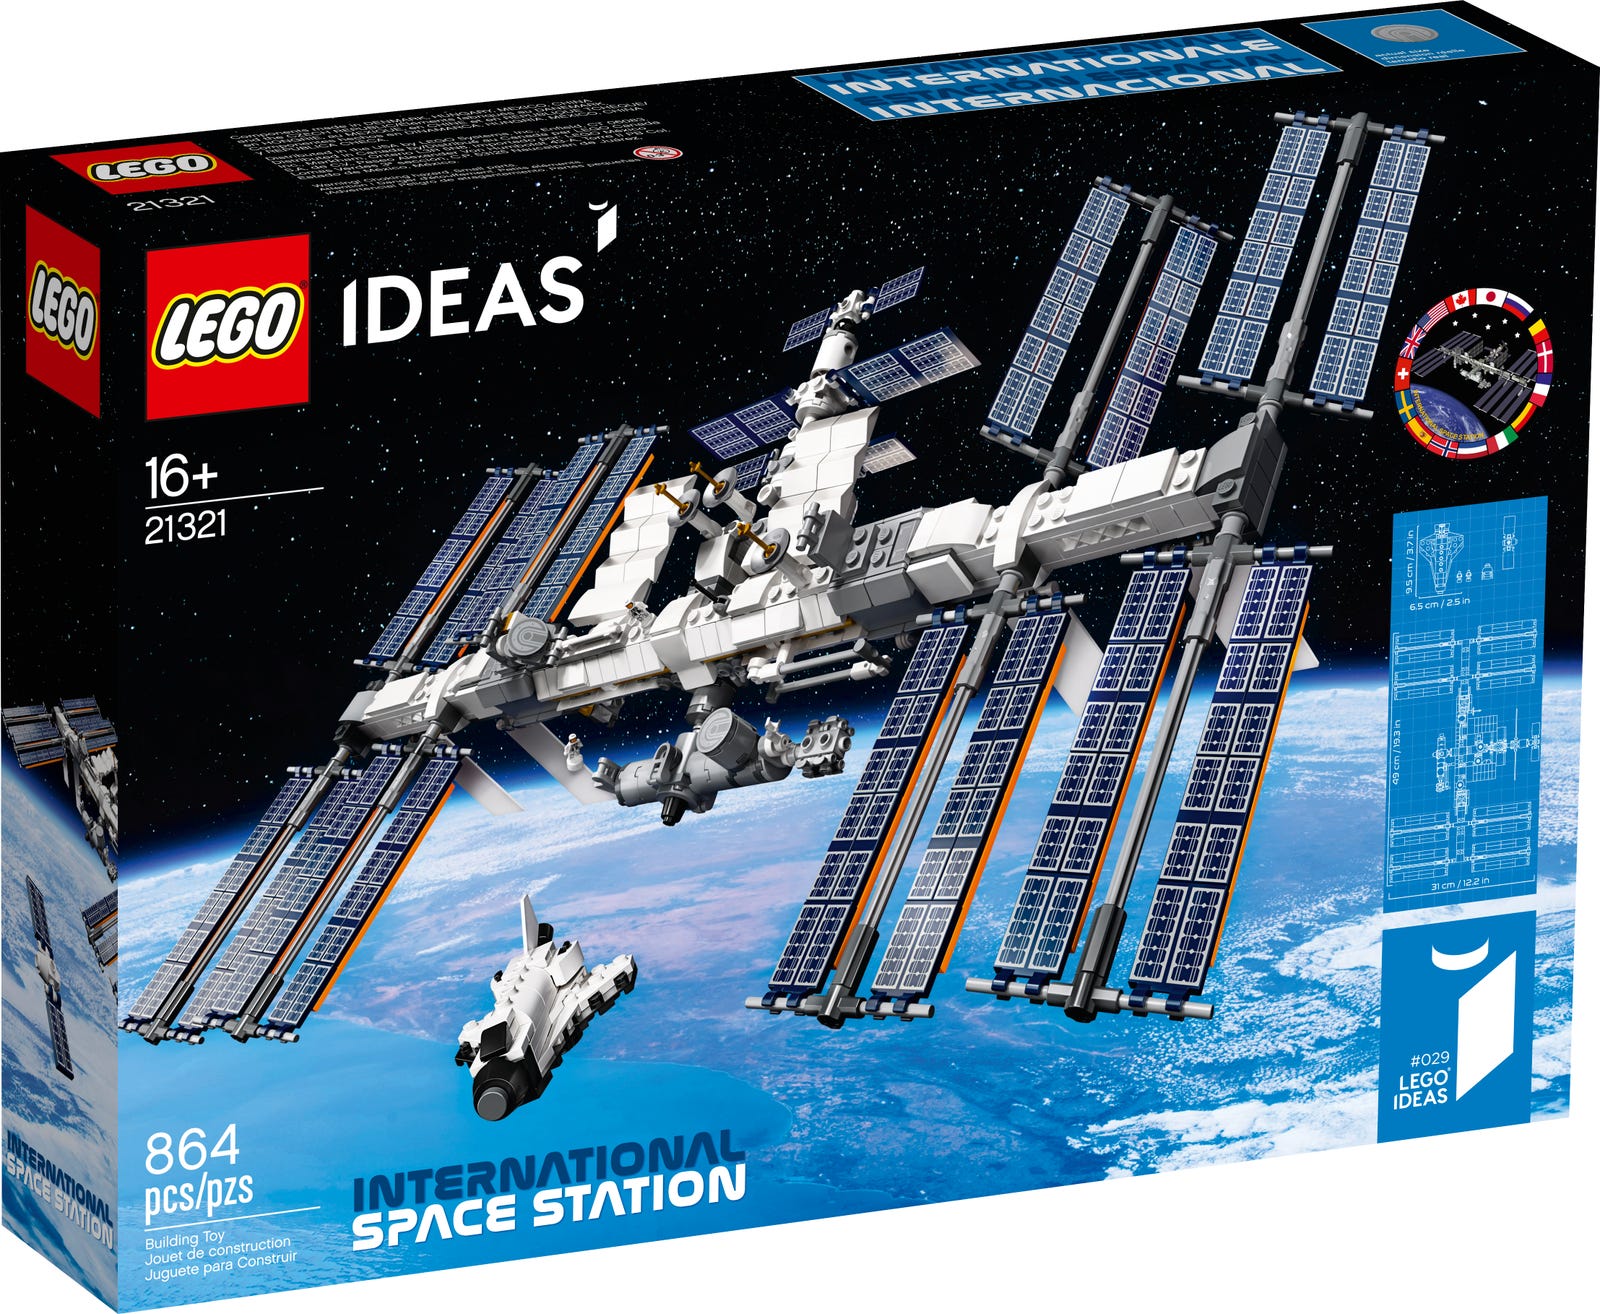 LEGO kembali menarik peralatan yang indah: Mereka membangun kembali Stasiun Luar Angkasa Internasional! 2